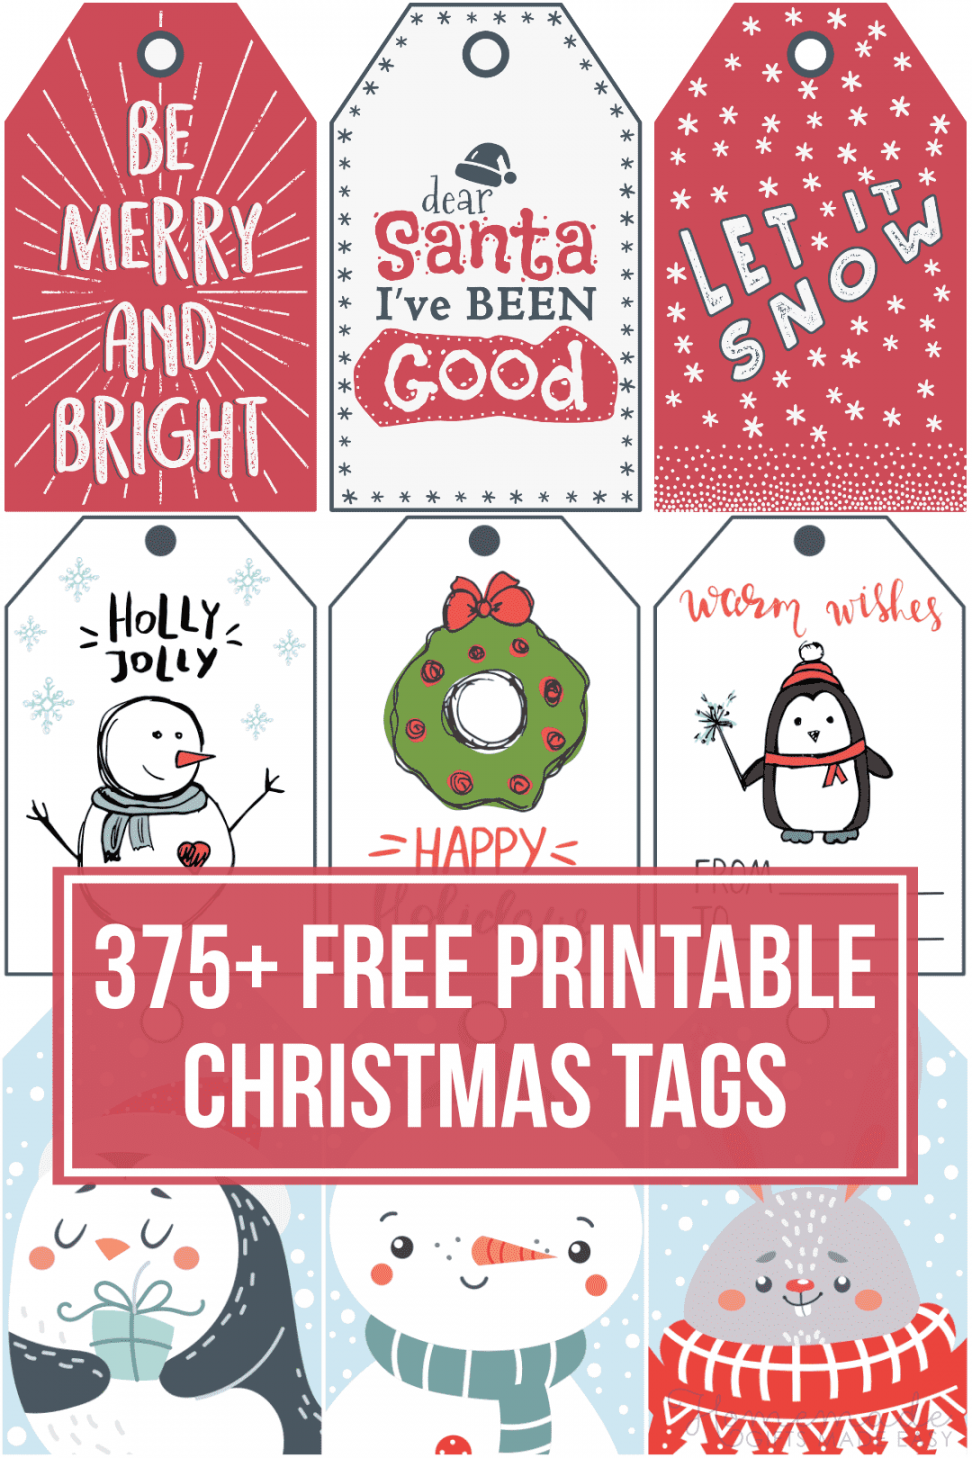 + Free Printable Christmas Tags for your Holiday Gifts - FREE Printables - Printable Christmas Tags Free